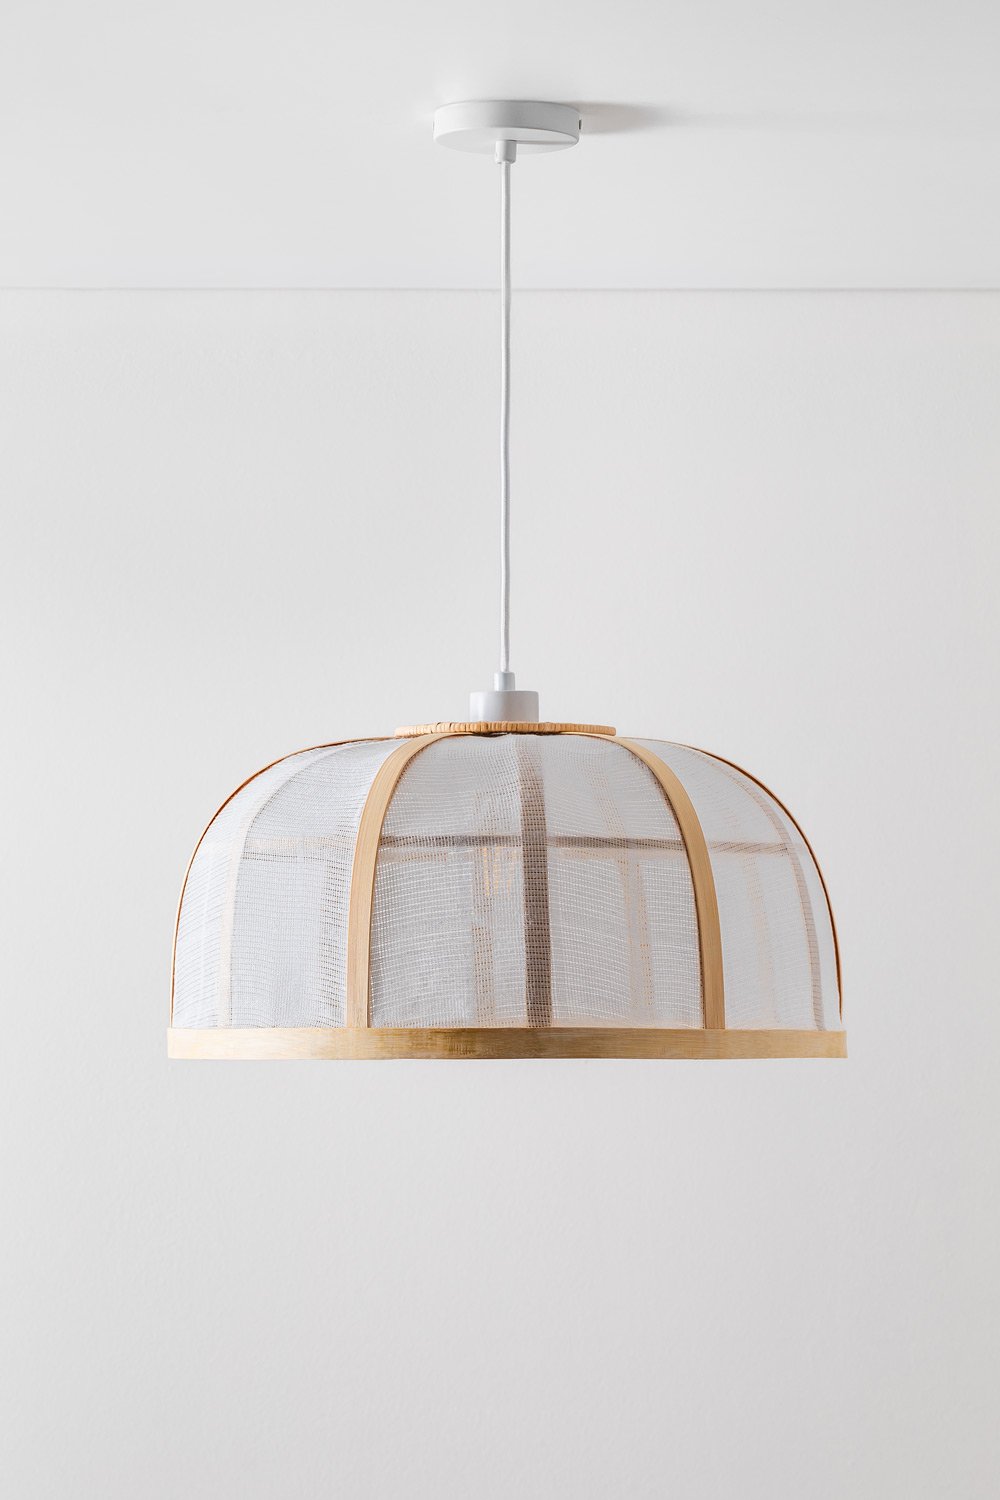 Lampa sufitowa z bambusa i bawełny (ø45 cm) Mikayla, obrazek w galerii 1